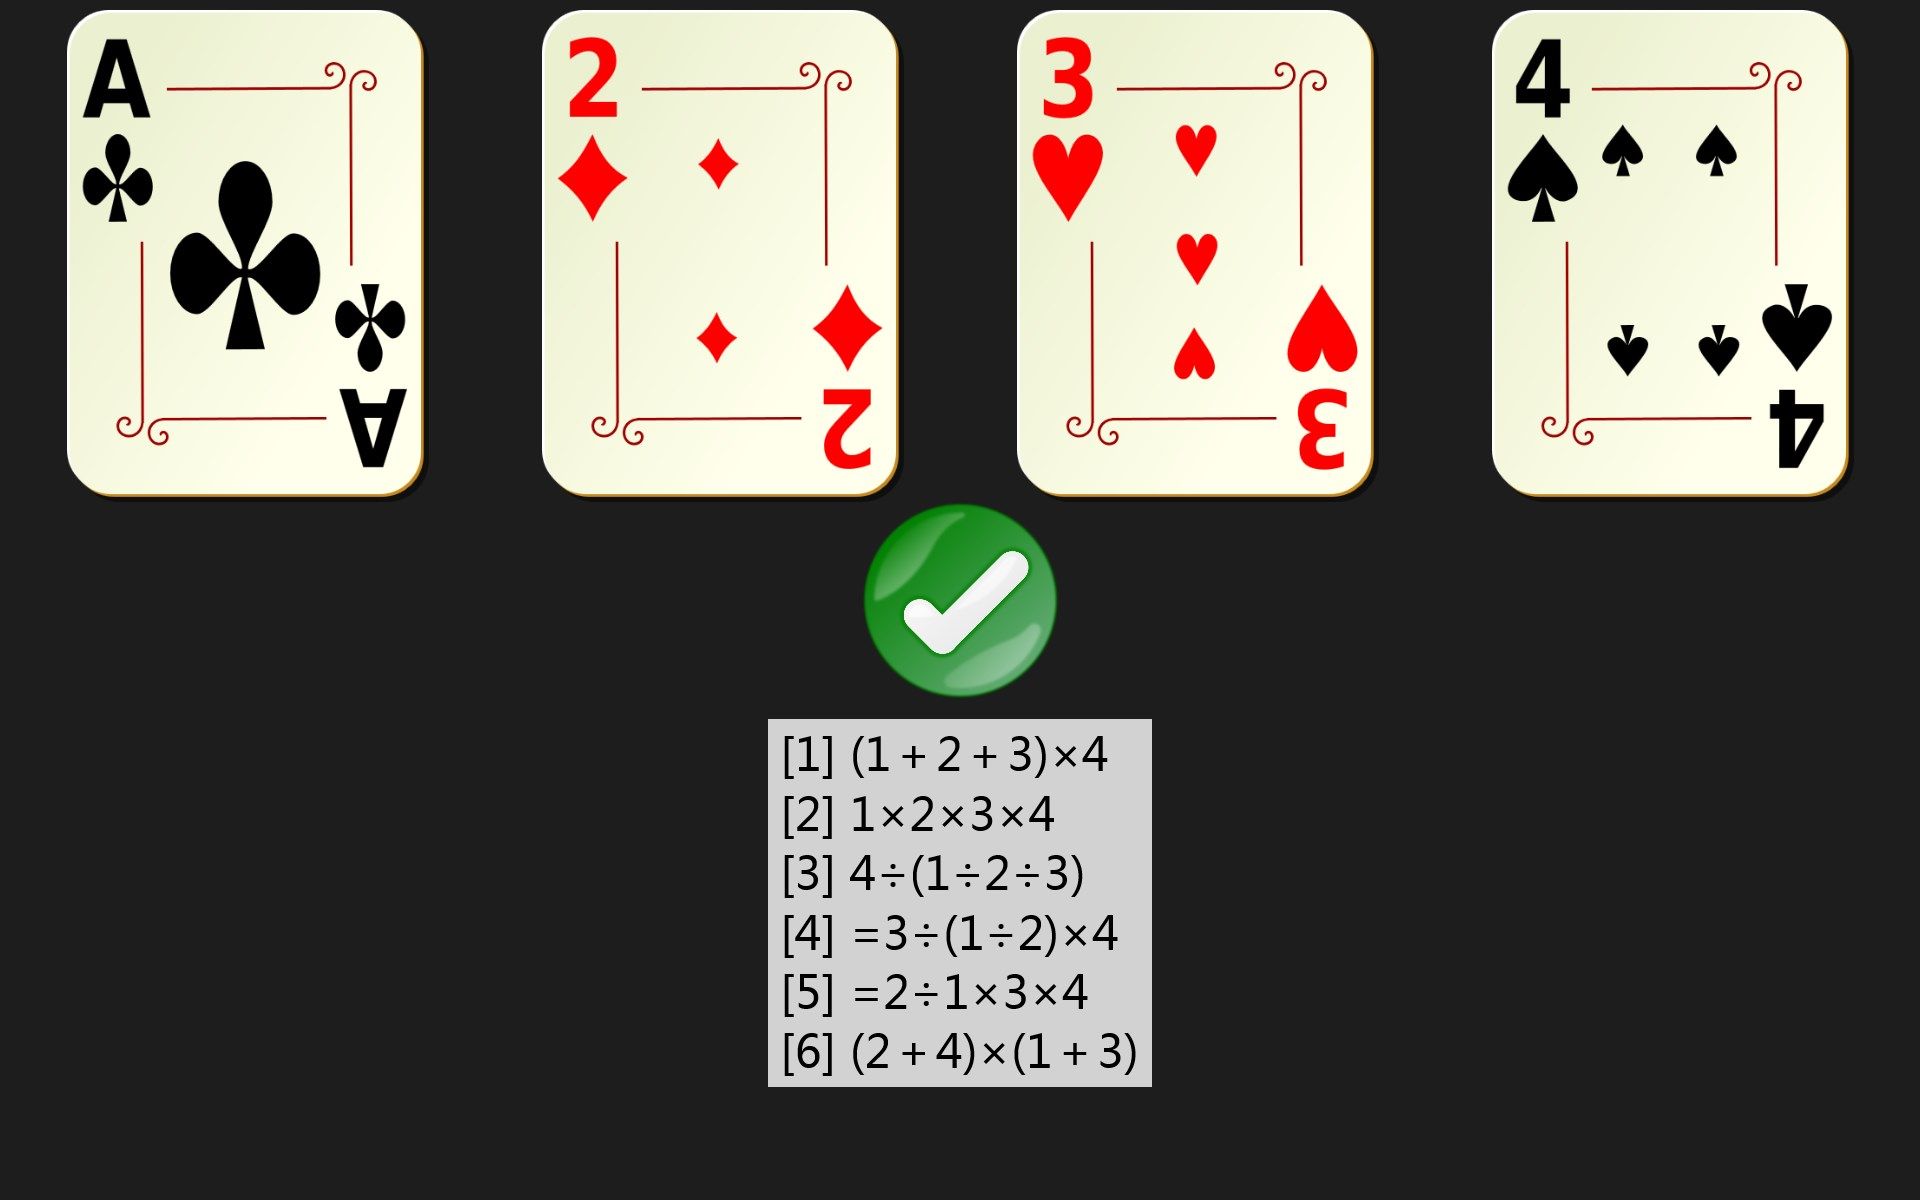 再次点击按钮可显示1，2，3，4的详细解答。其中[3],[4],[5]为本质相同解。